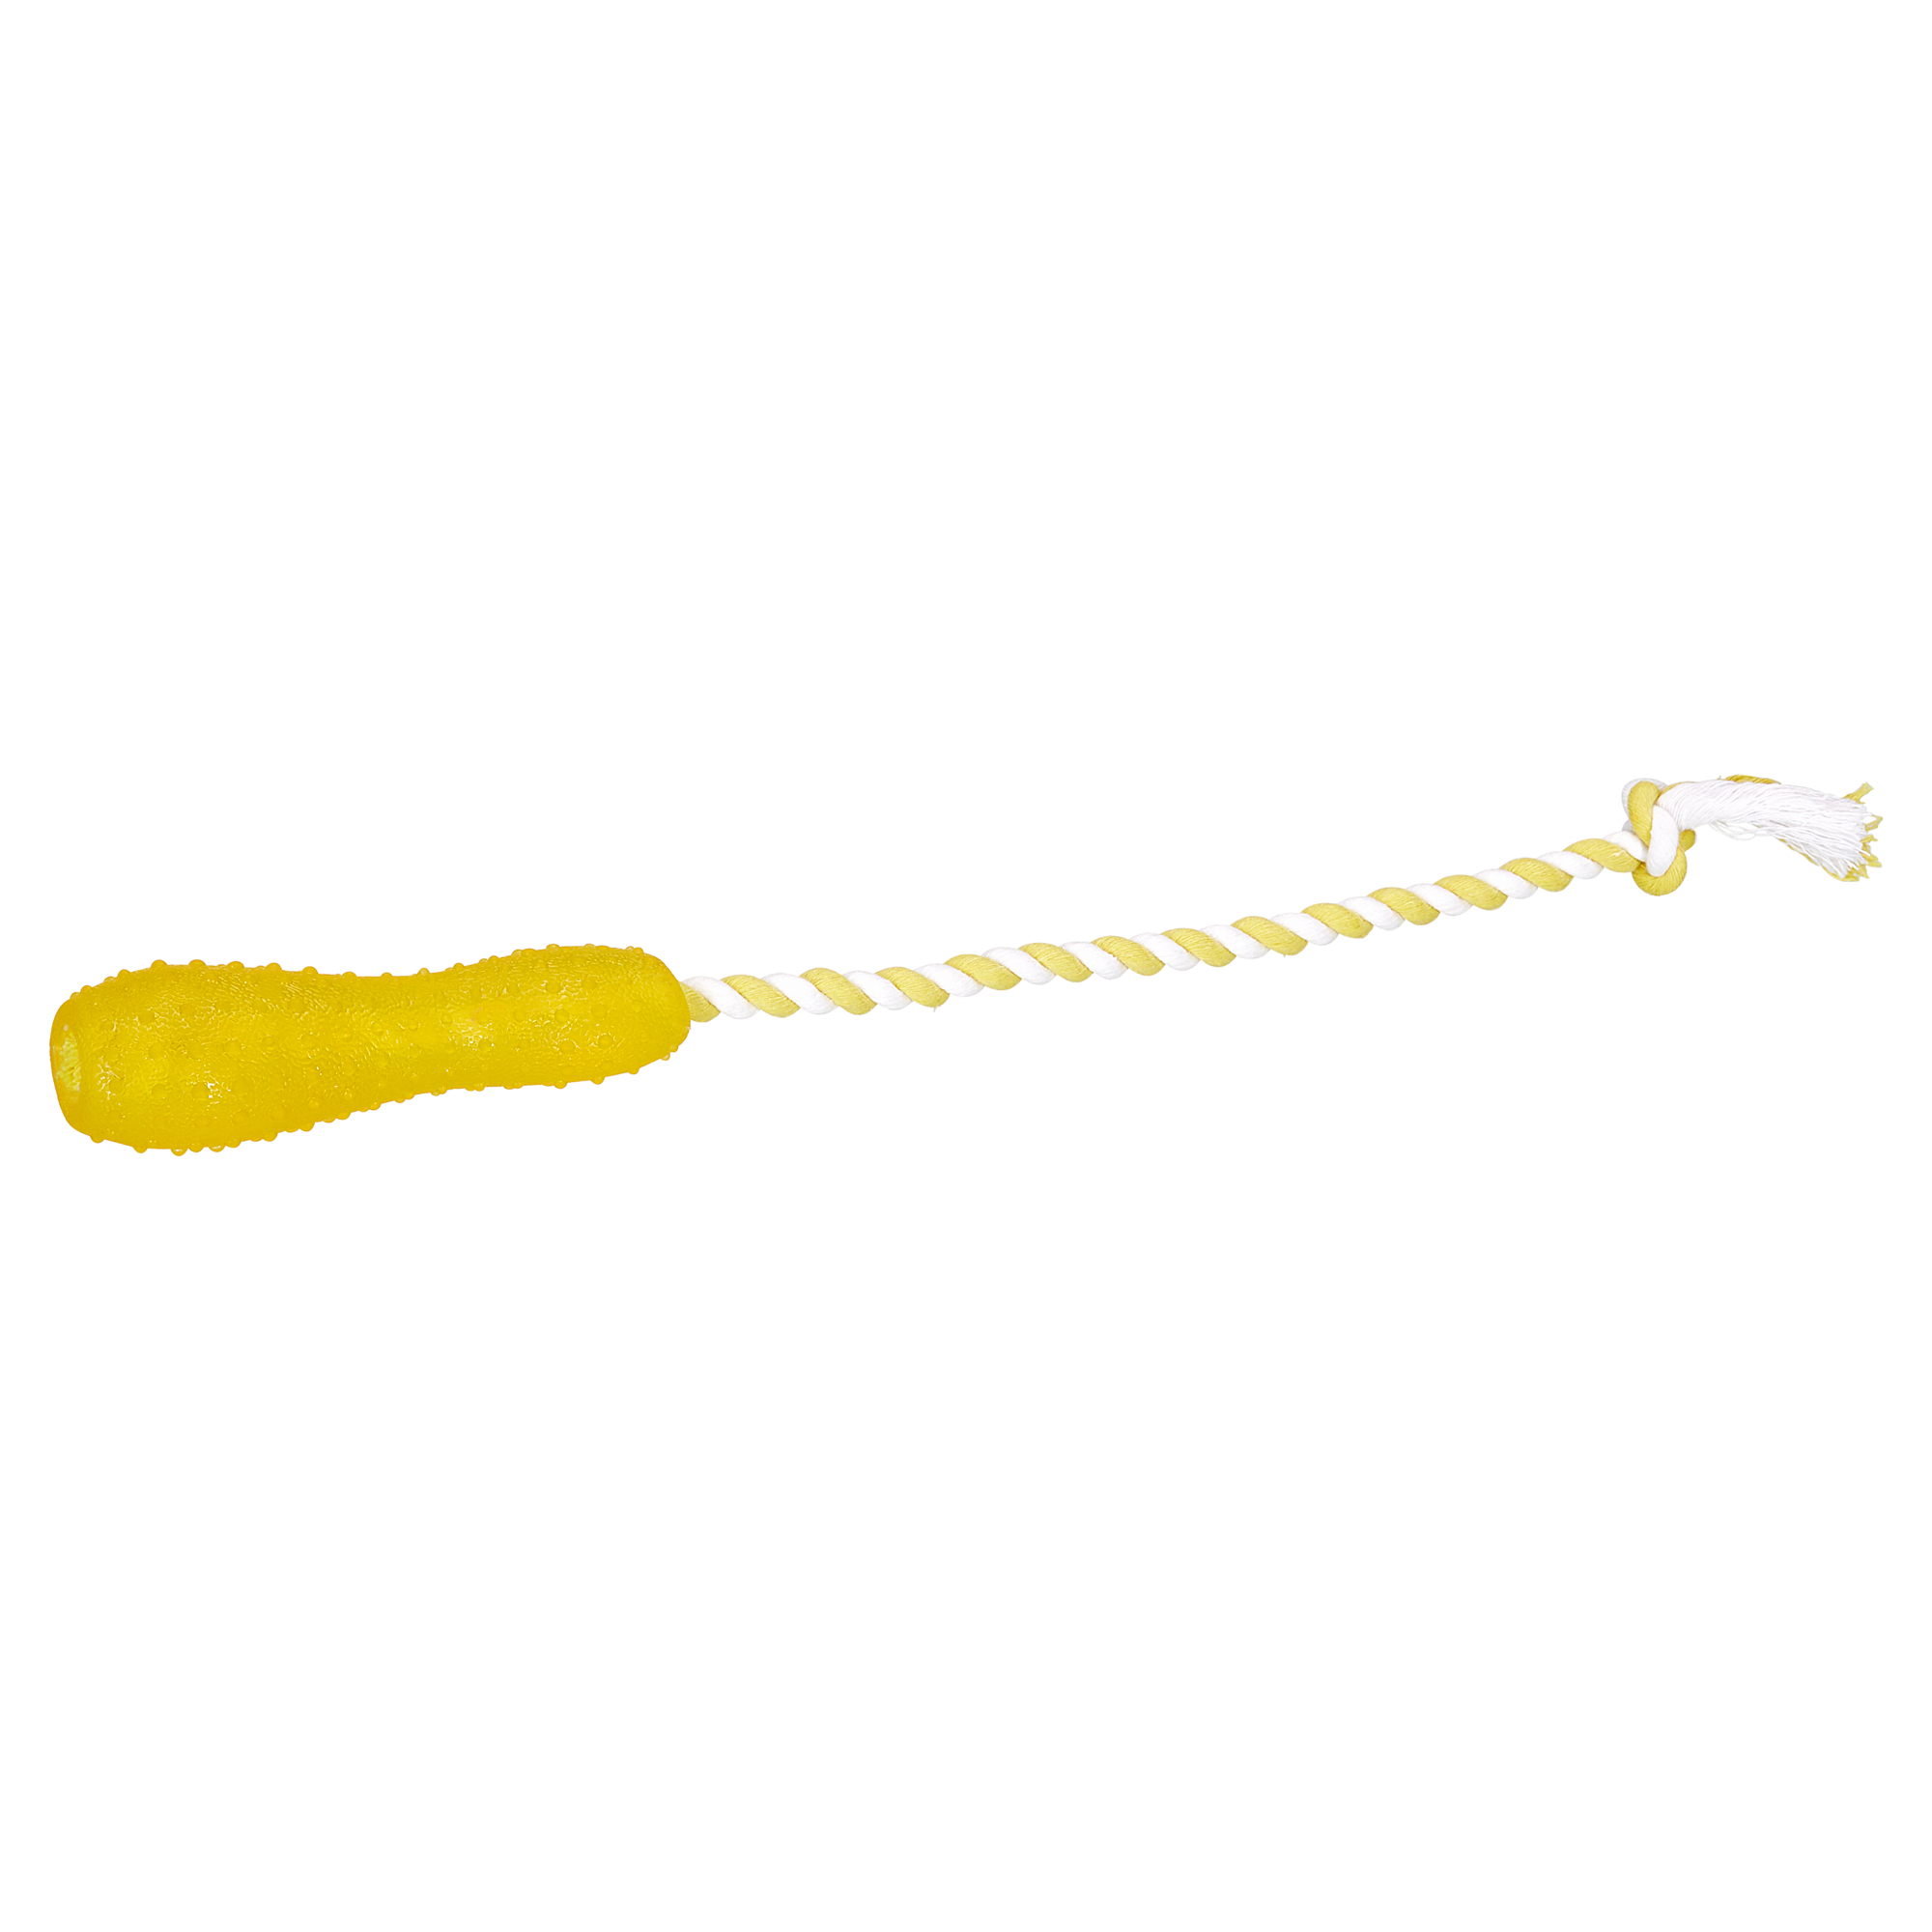 Hundespielzeug Motivationstick Gummi gelb/weiß 15 cm + product picture